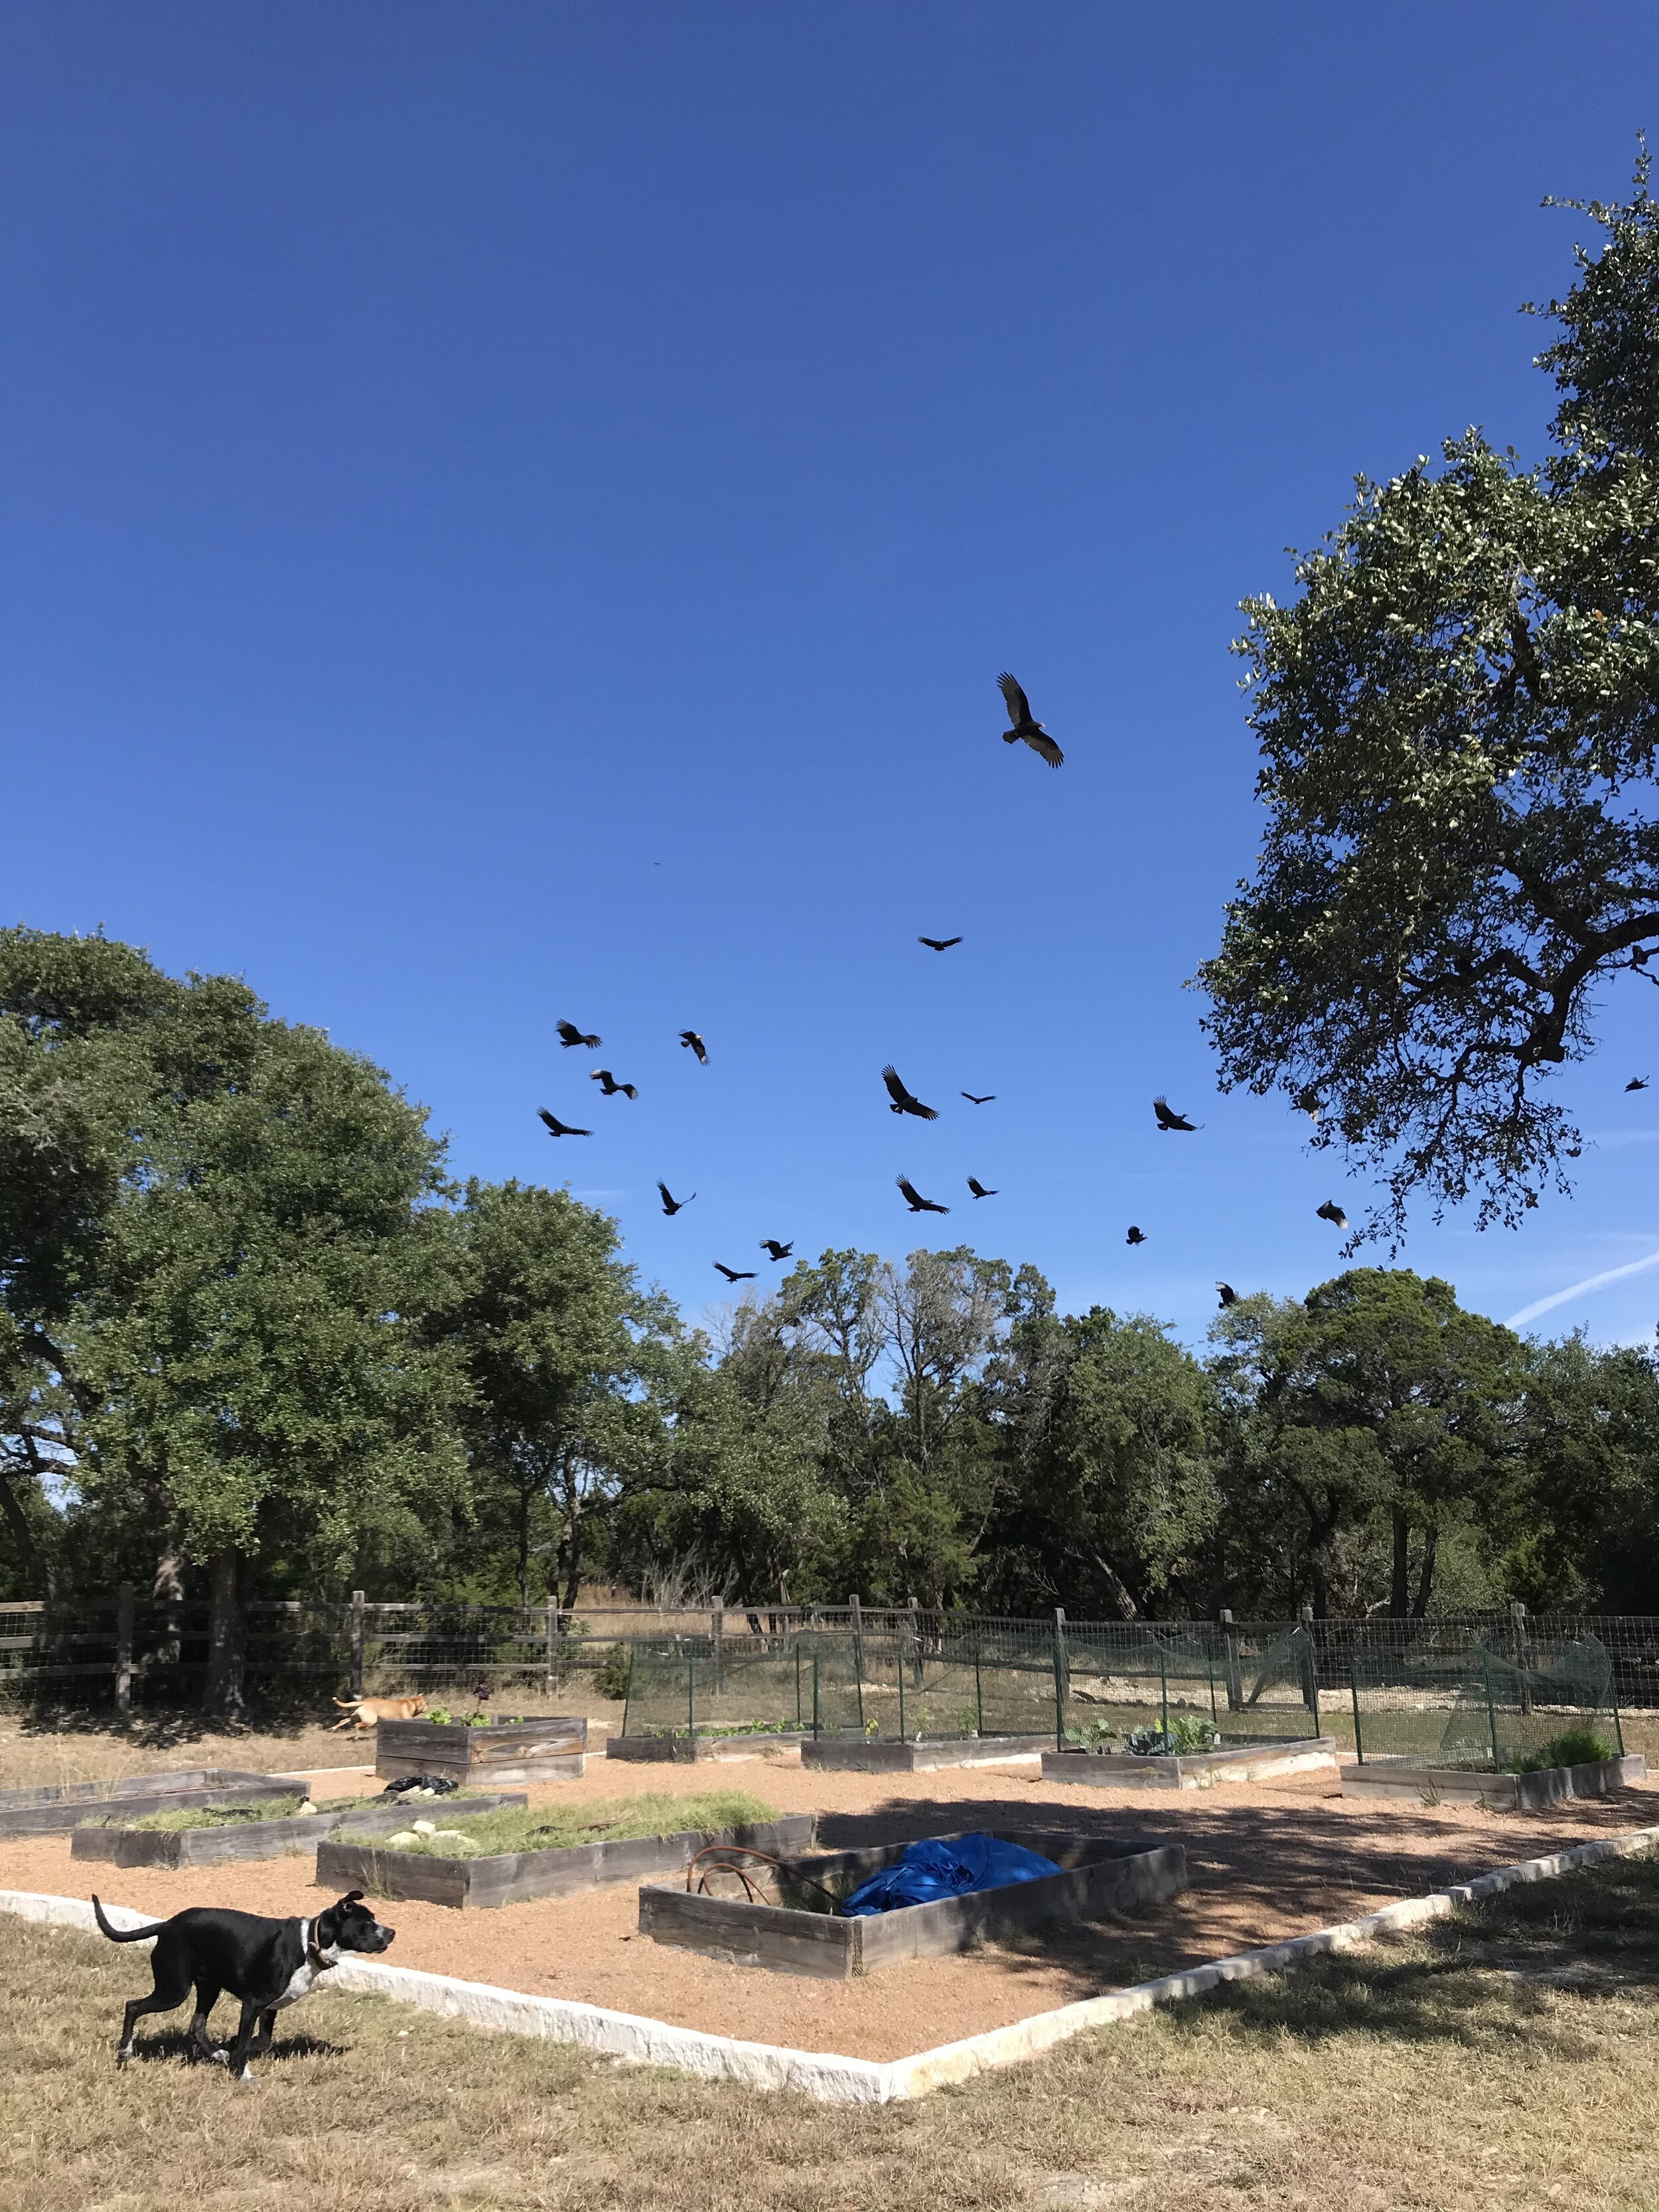 huge number of vultures flying overhead